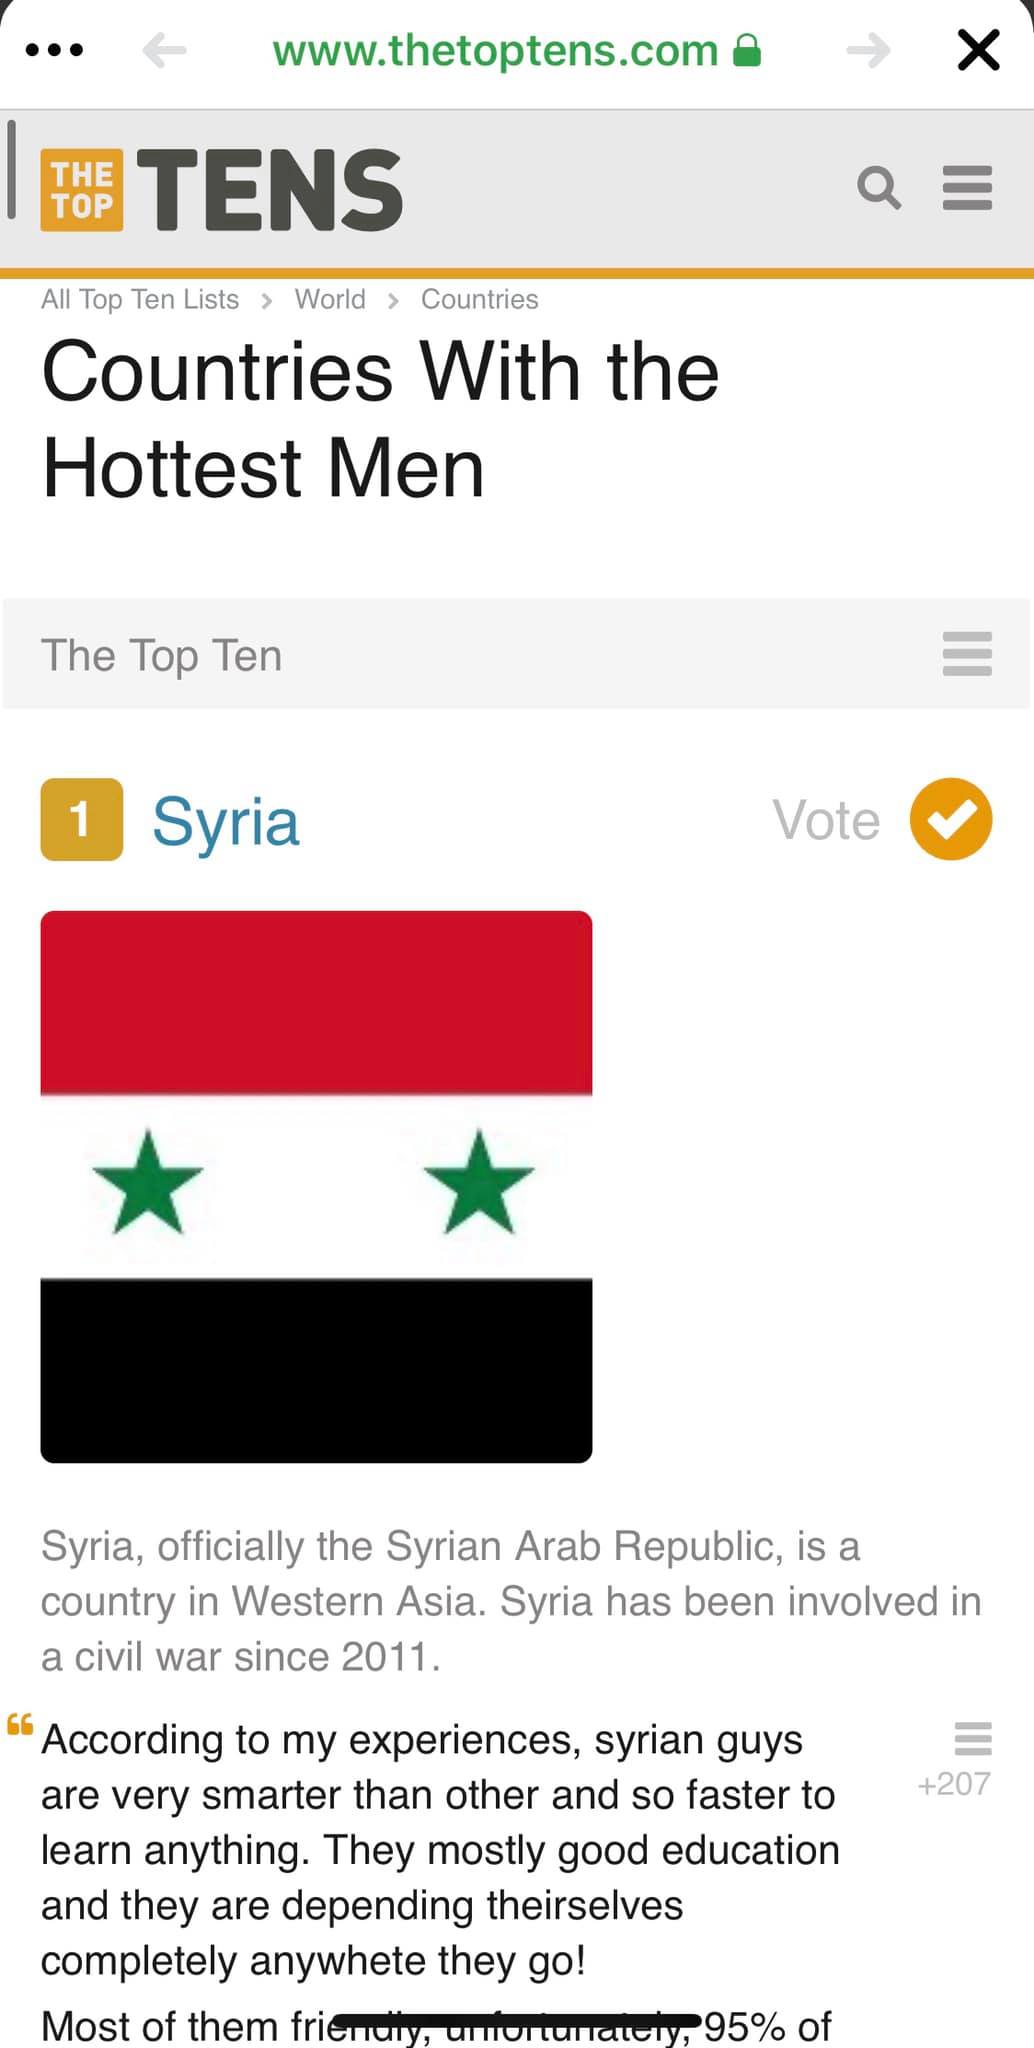 الرجل السوري هو الأكثر إثارة حول العالم بحسب موقع the top tens للإحصاء